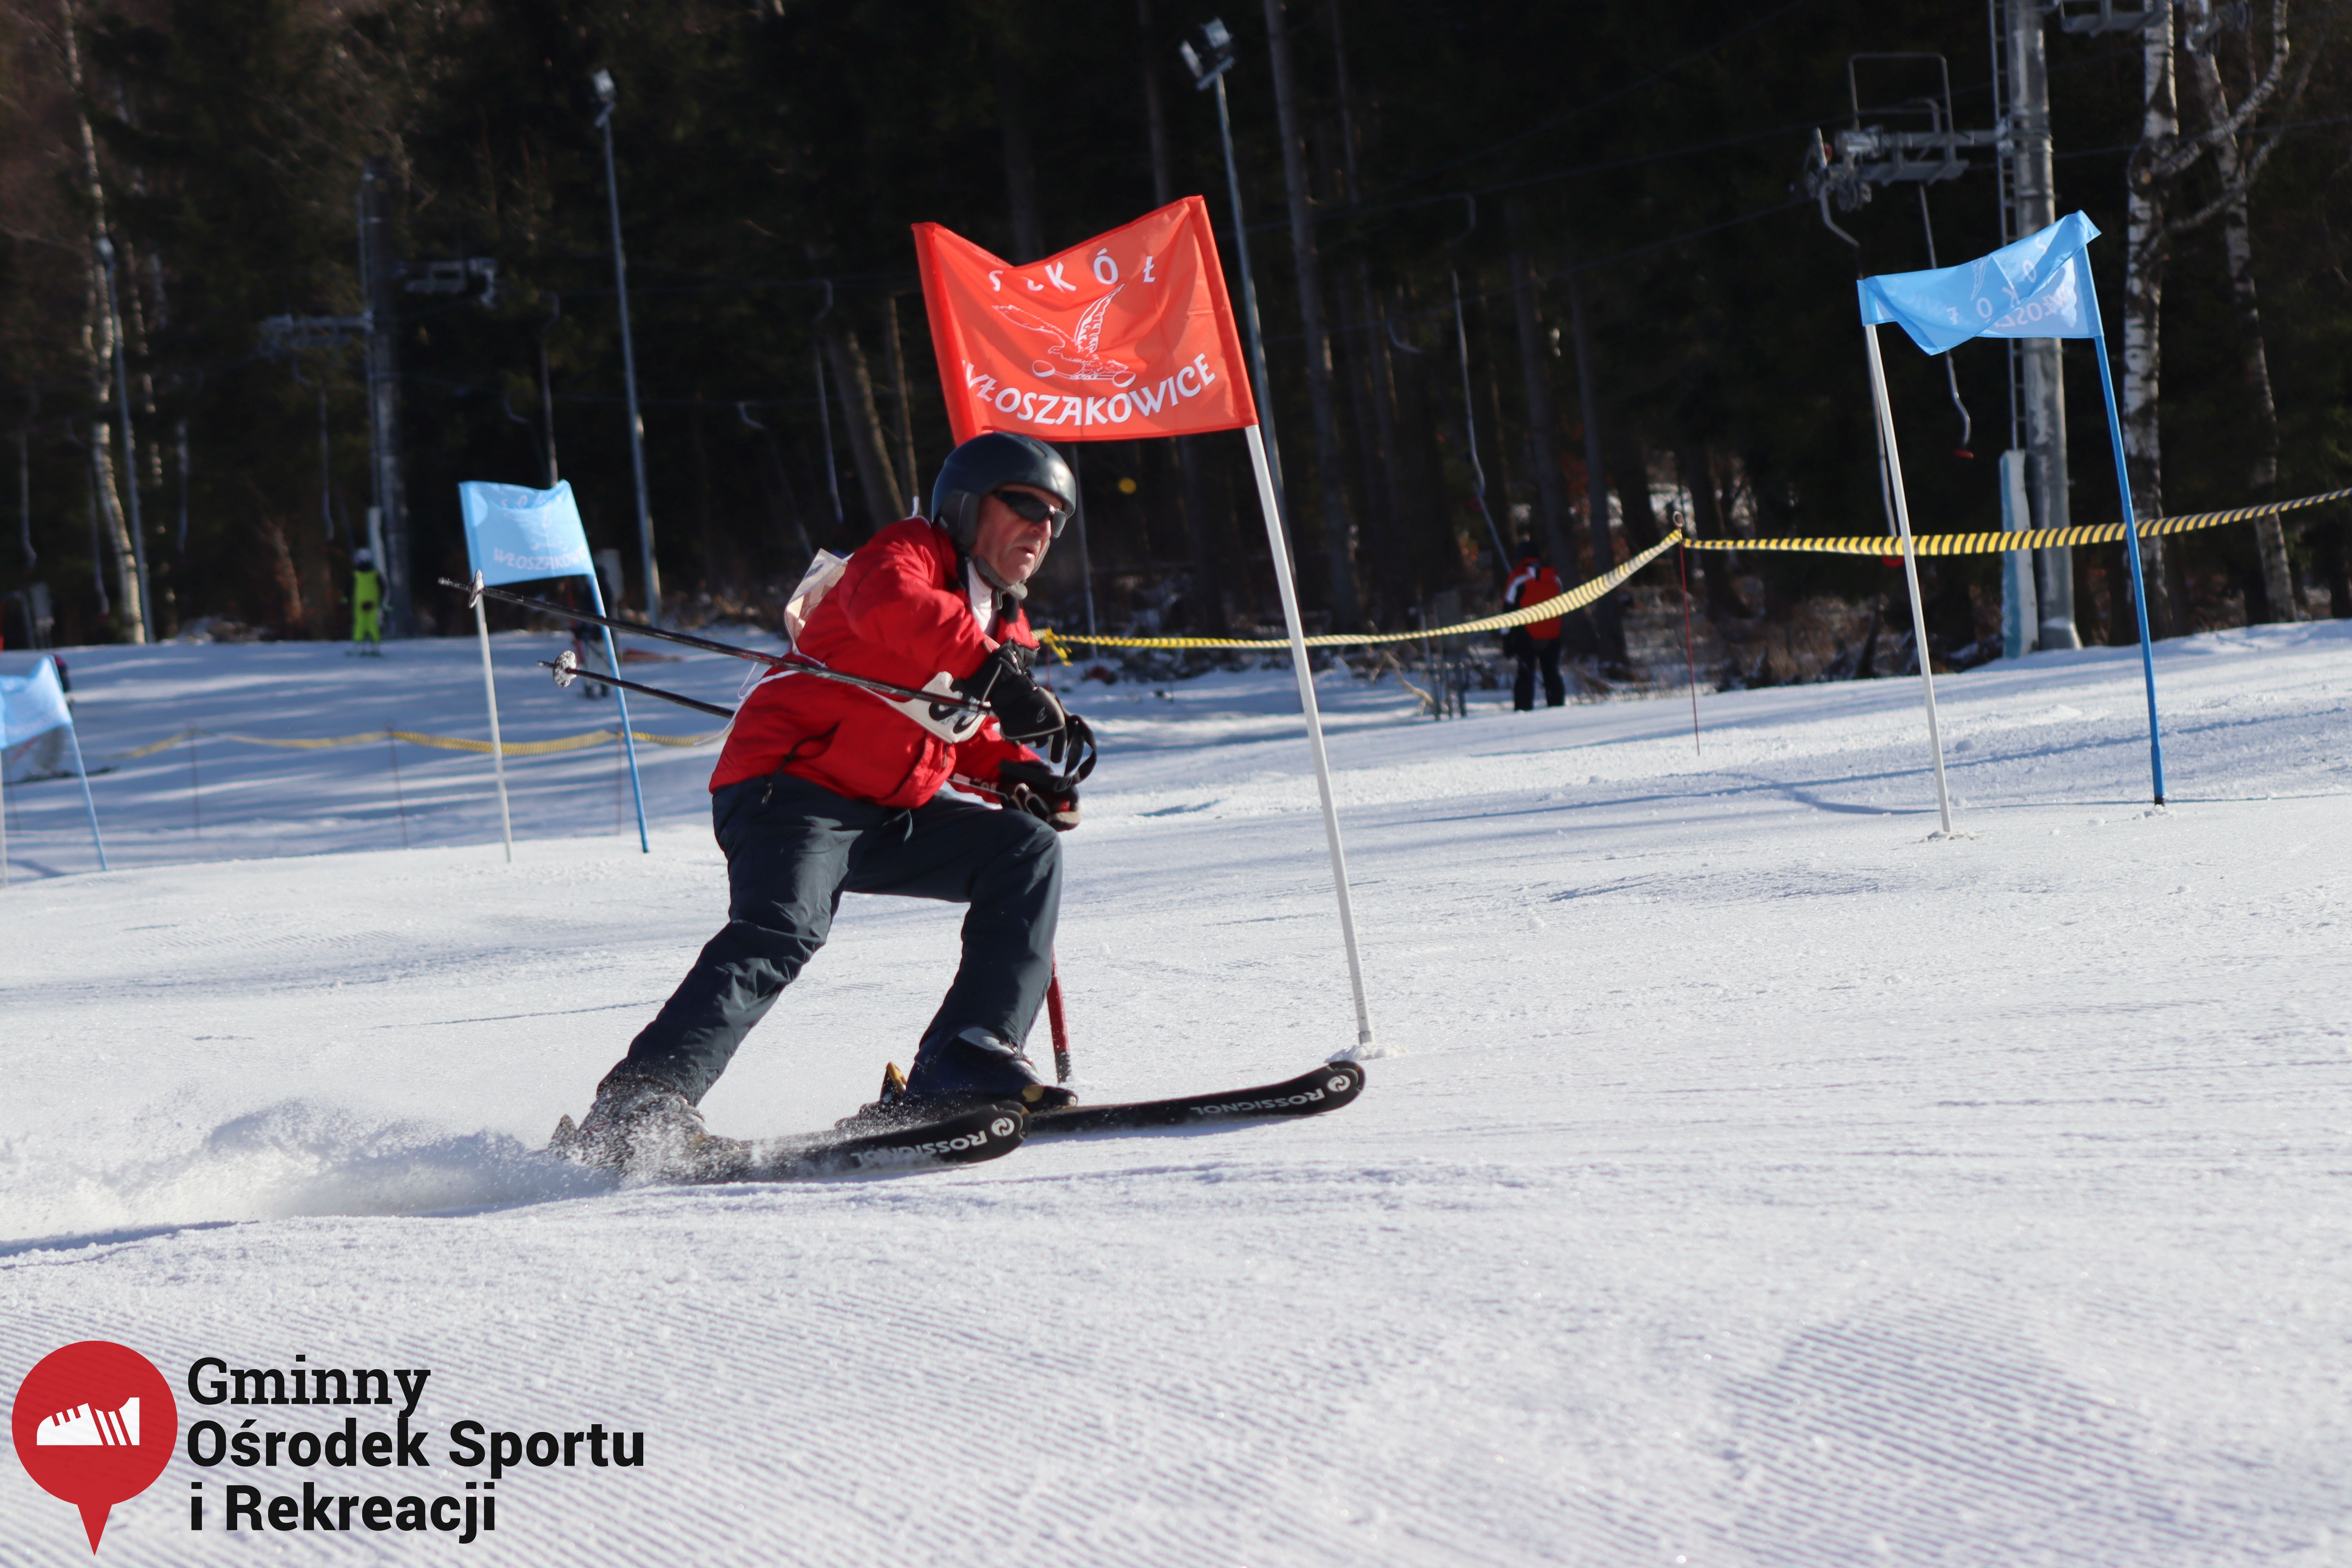 2022.02.12 - 18. Mistrzostwa Gminy Woszakowice w narciarstwie077.jpg - 1,77 MB